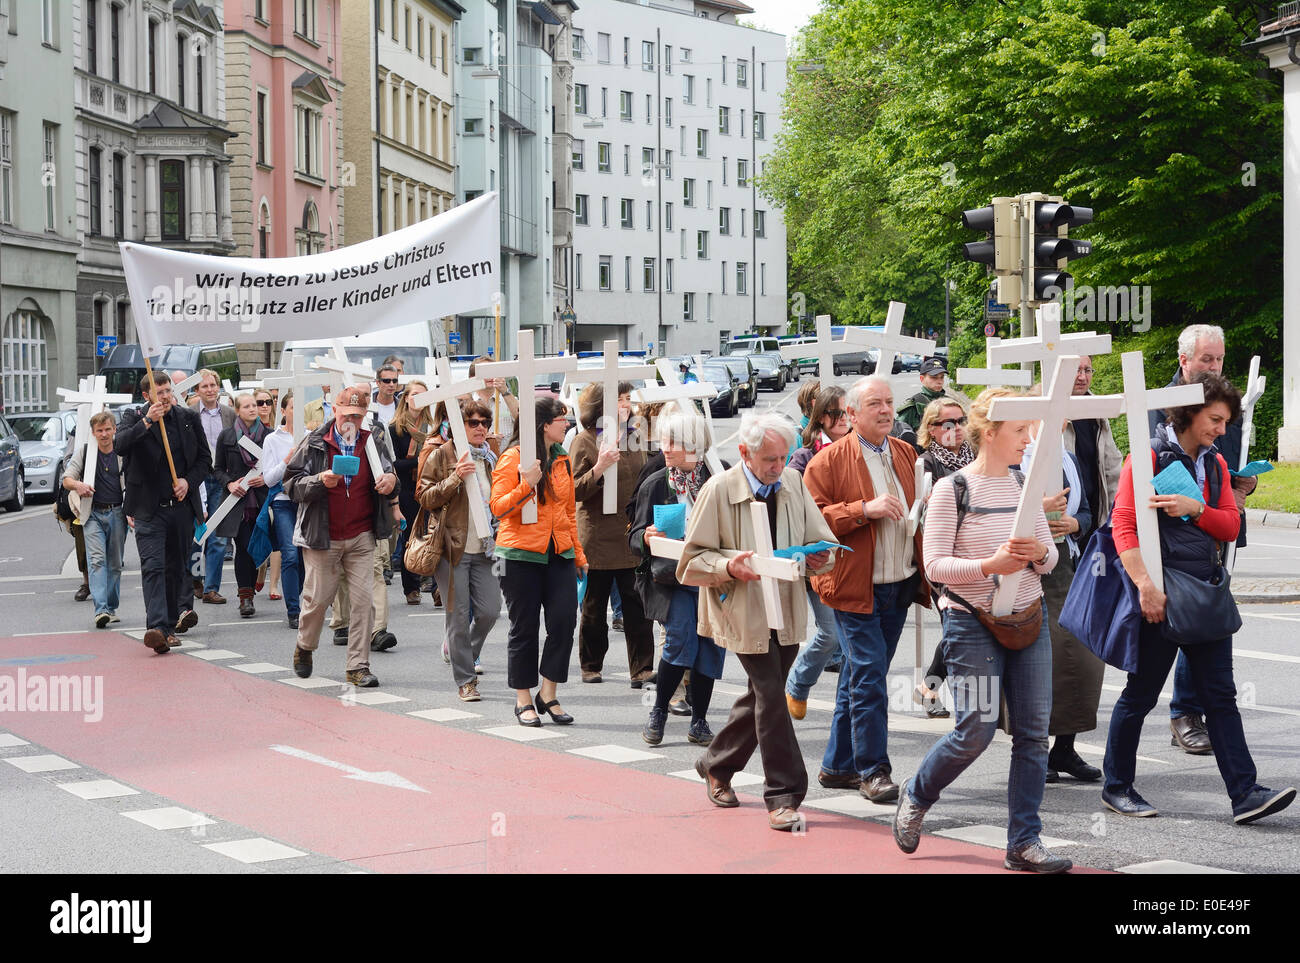 MUNICH, Alemania - 10 de mayo de 2014: Anti-Abortion demostración con los participantes portaban las cruces cristianas y banners. Foto de stock